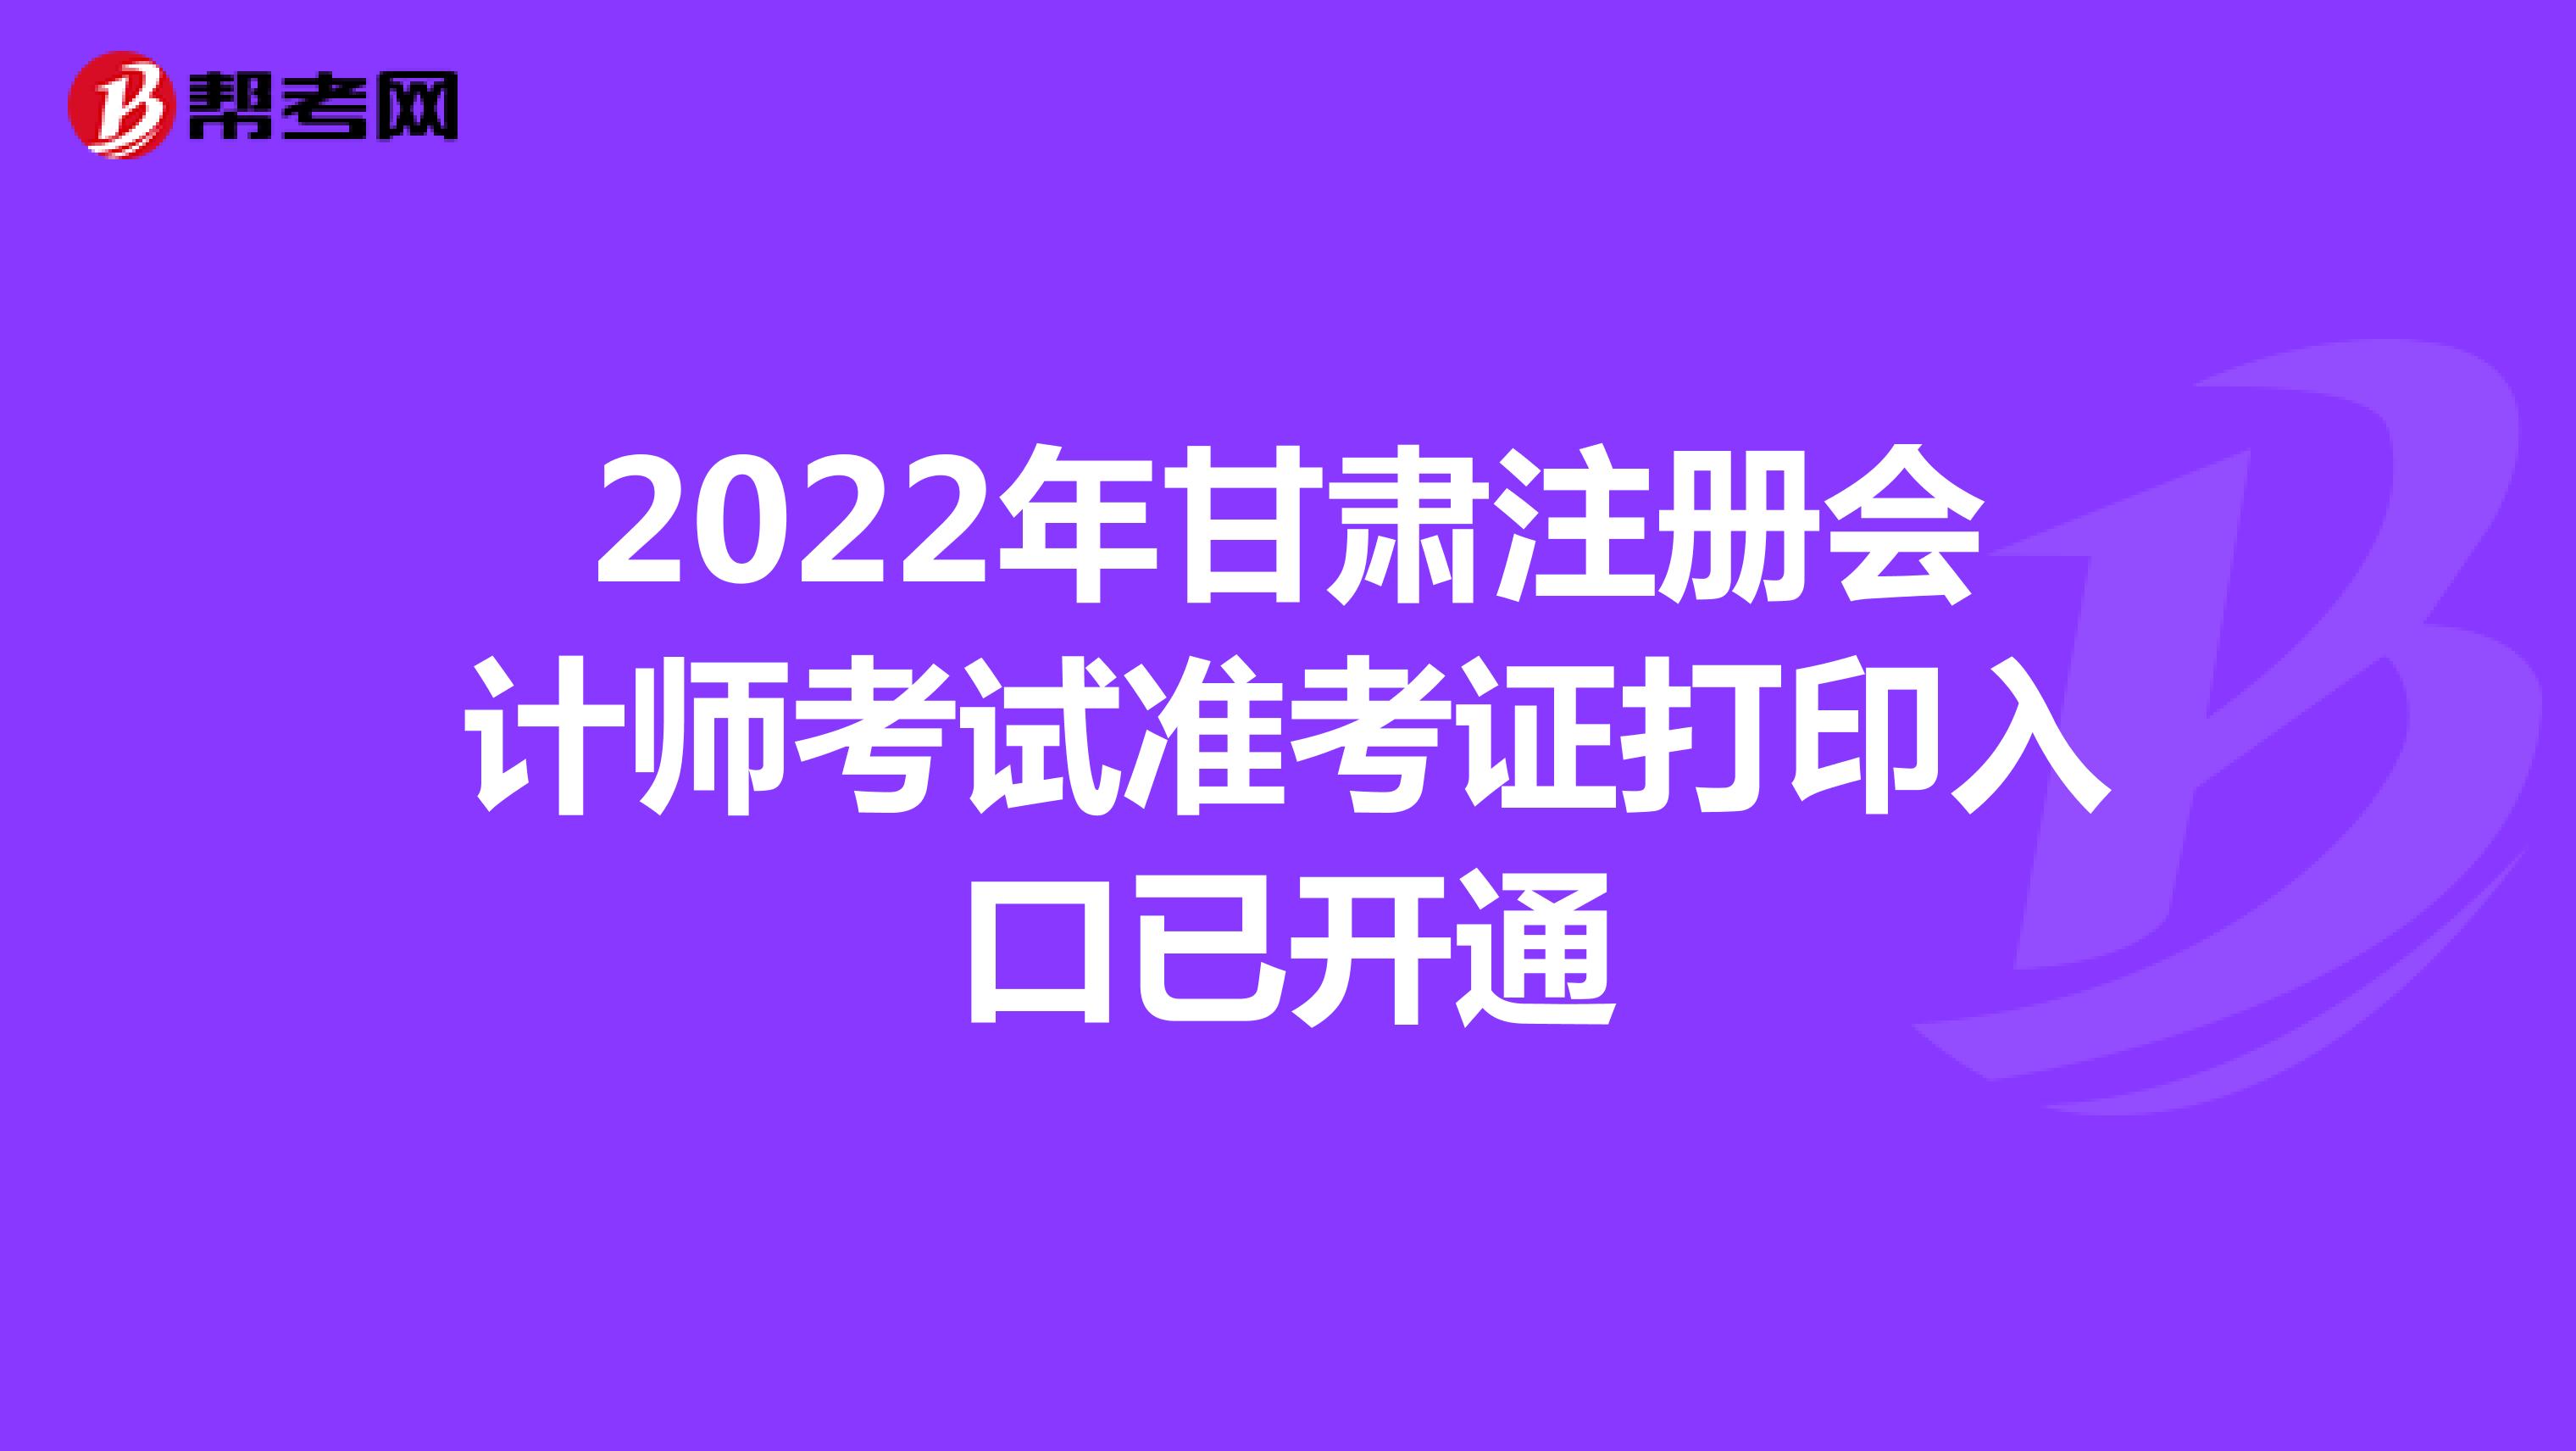 2022年甘肃注册会计师考试准考证打印入口已开通